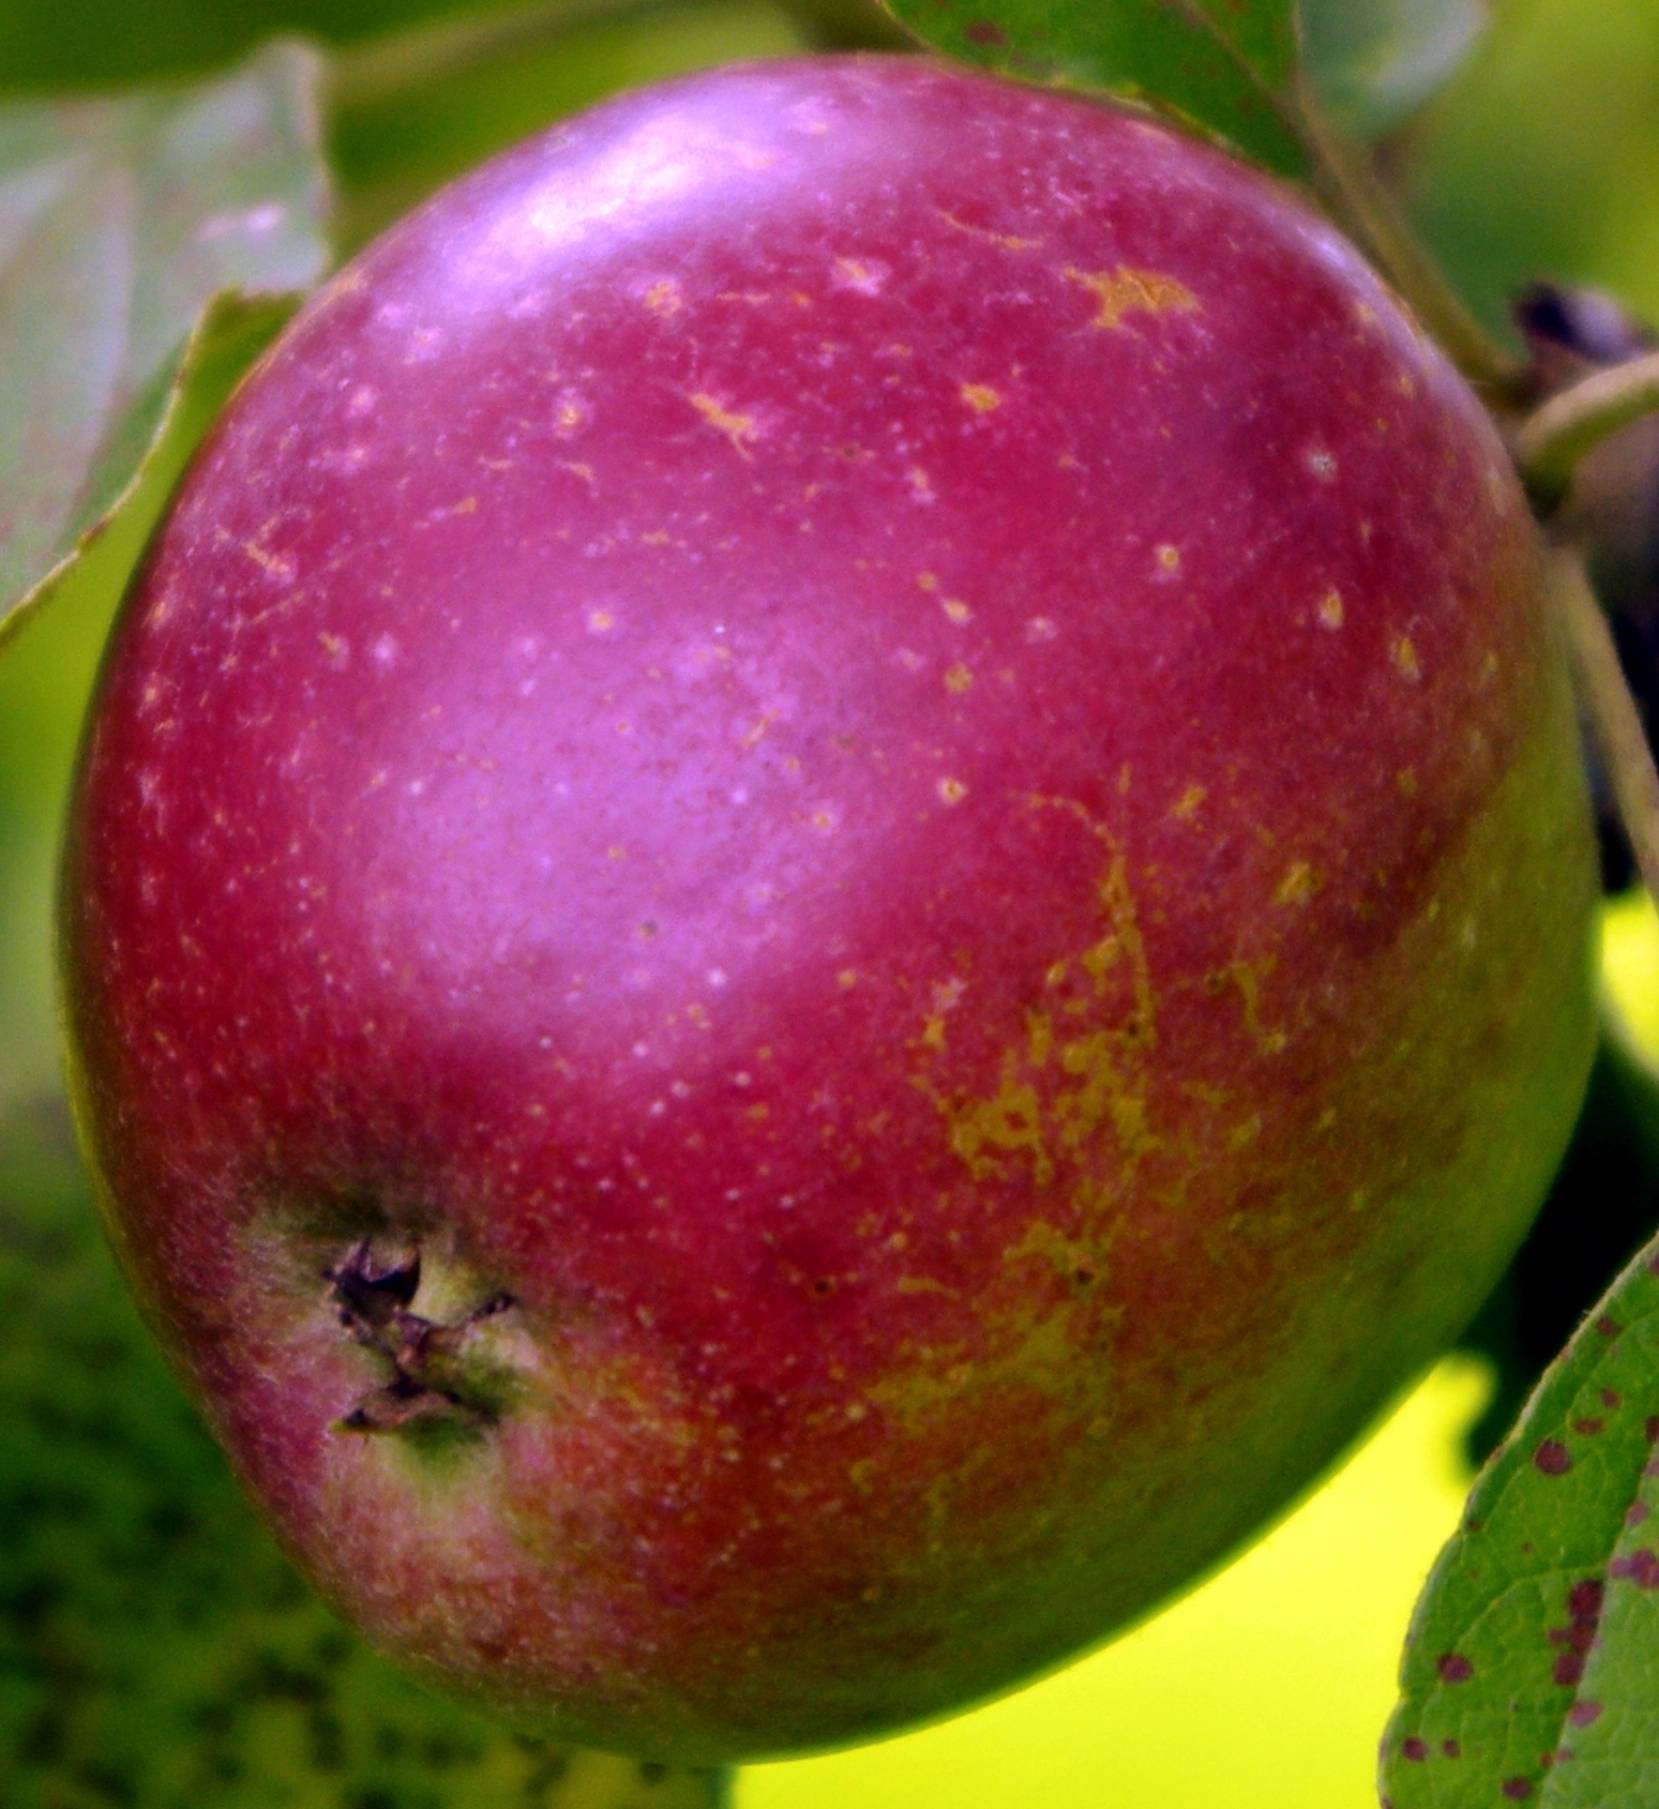 Яблоня коваленковское описание сорта опылители